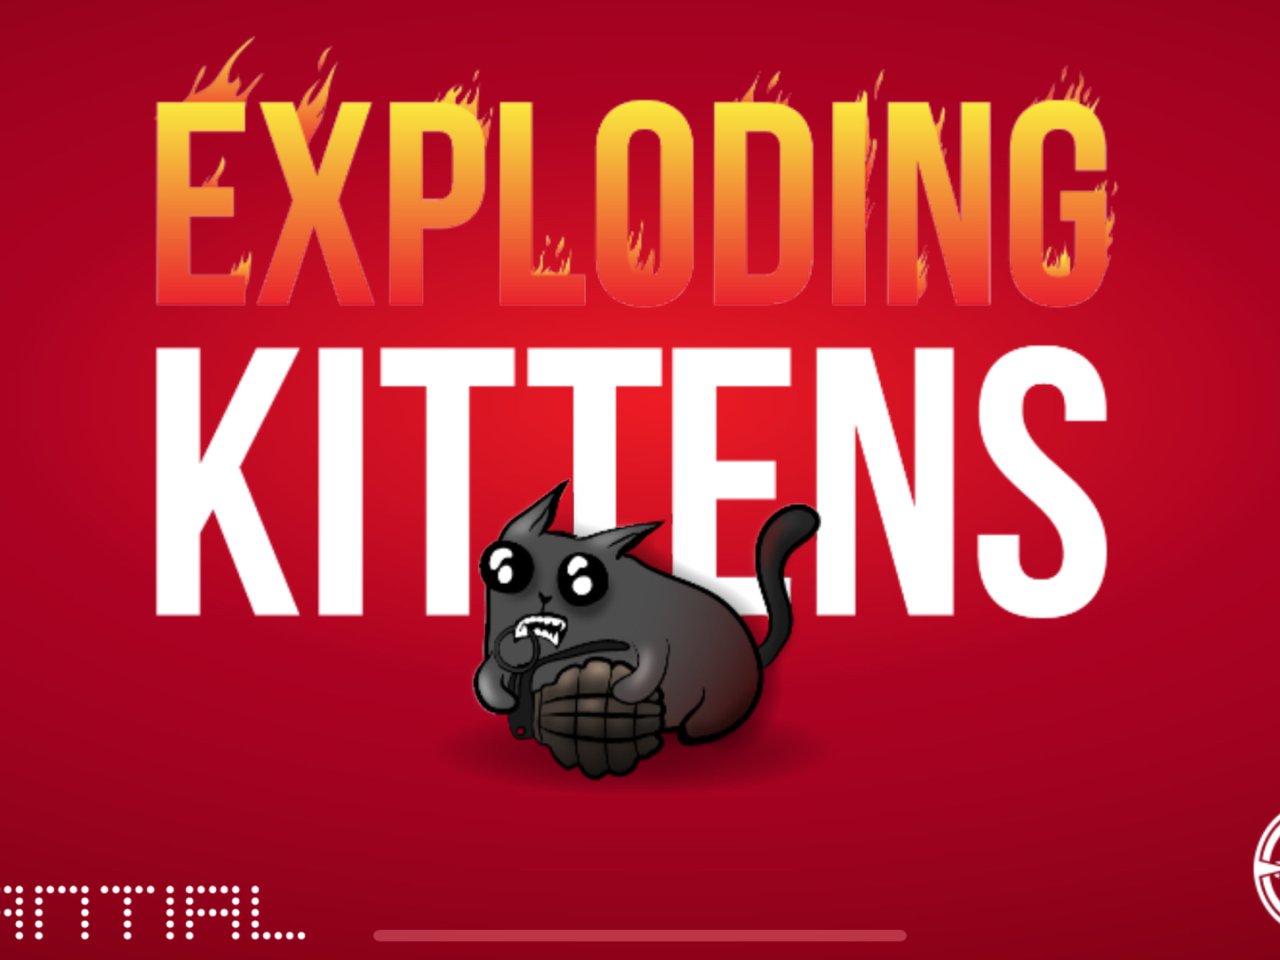 exploding kittens